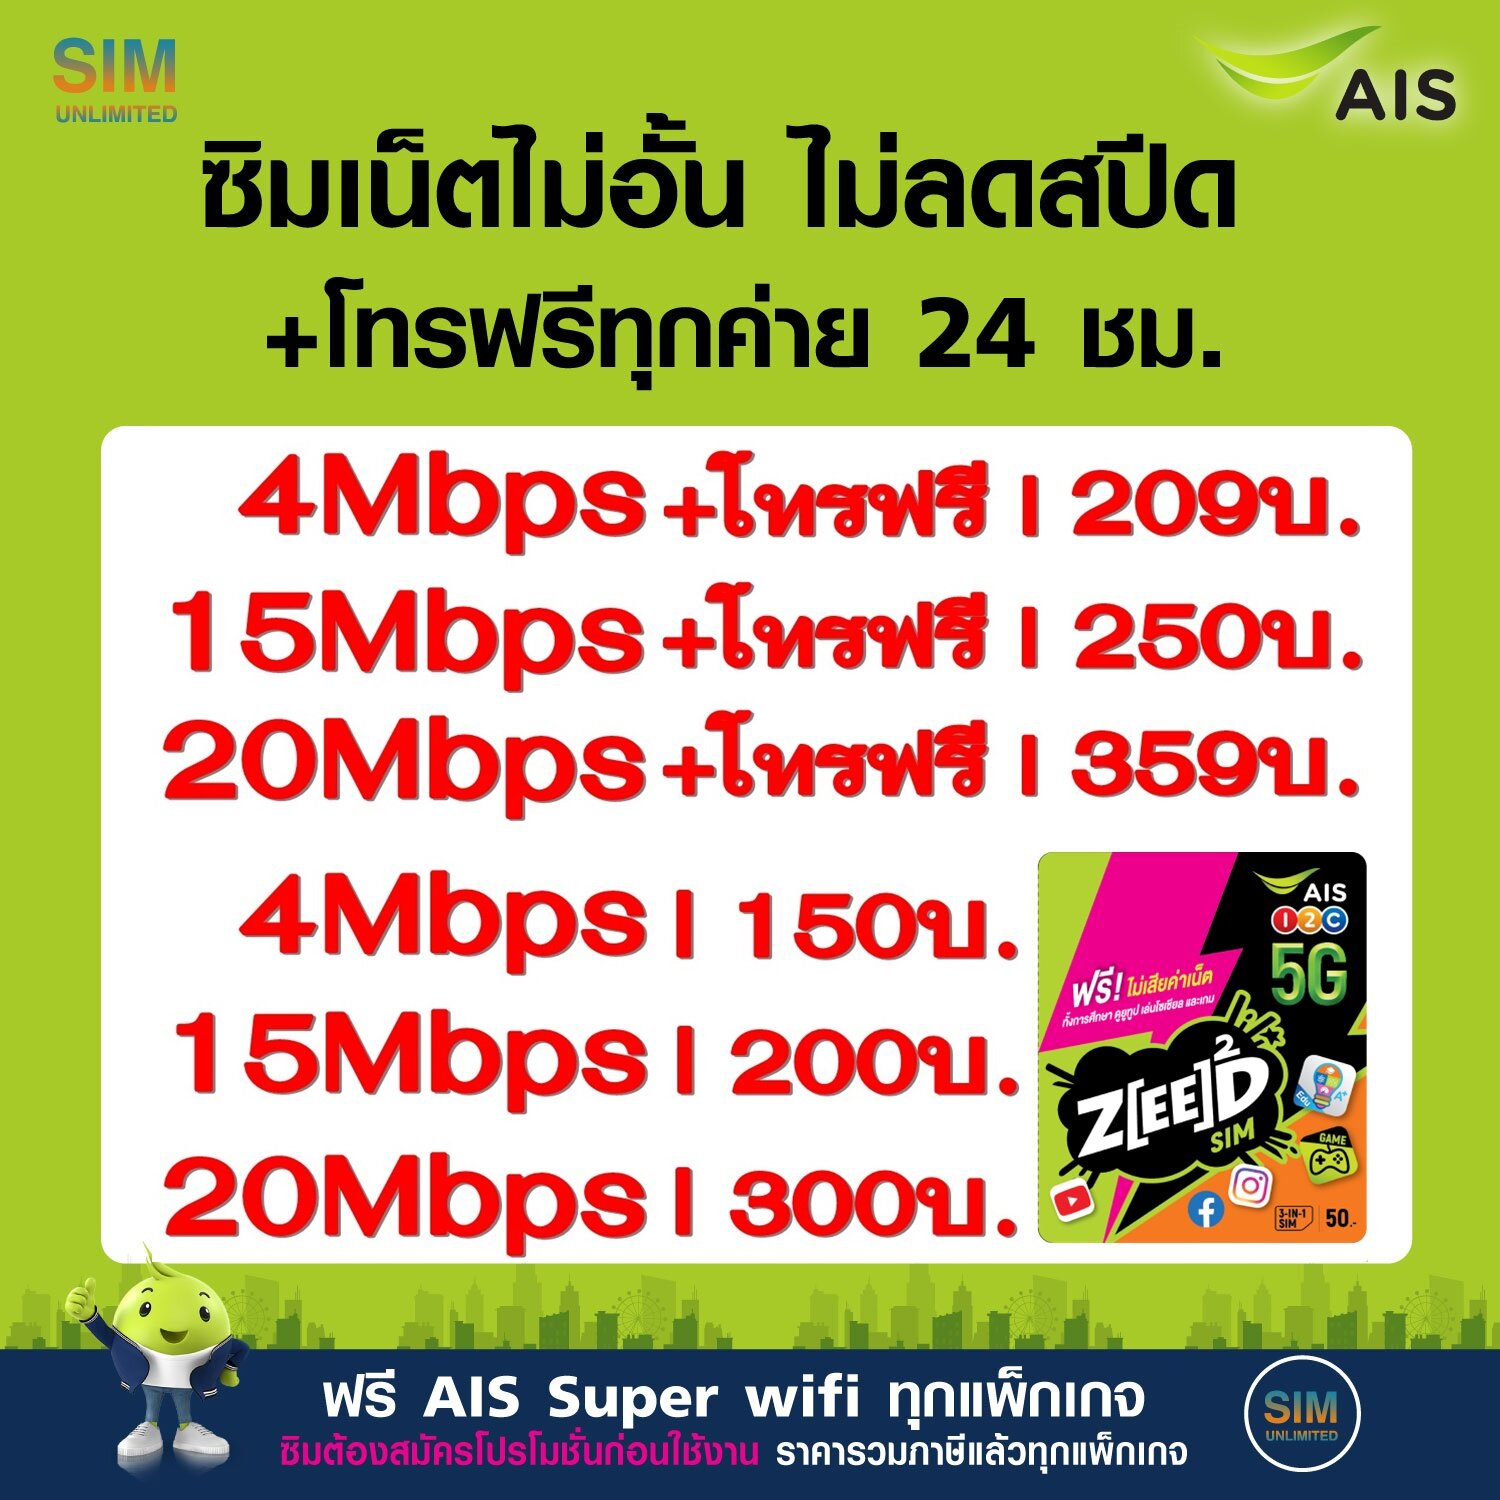 โปรโมชั่น Flash Sale : ซิมเทพ AIS เล่นไม่อั้น ไม่ลดสปีด +โทรฟรีทุกค่าย ความเร็ว 4Mbps, 8Mbps, 15Mbps , 20Mbps, 30Mbps (พร้อมใช้ฟรี AIS Super wifi แบบไม่จำกัด ทุกแพ็กเกจ)